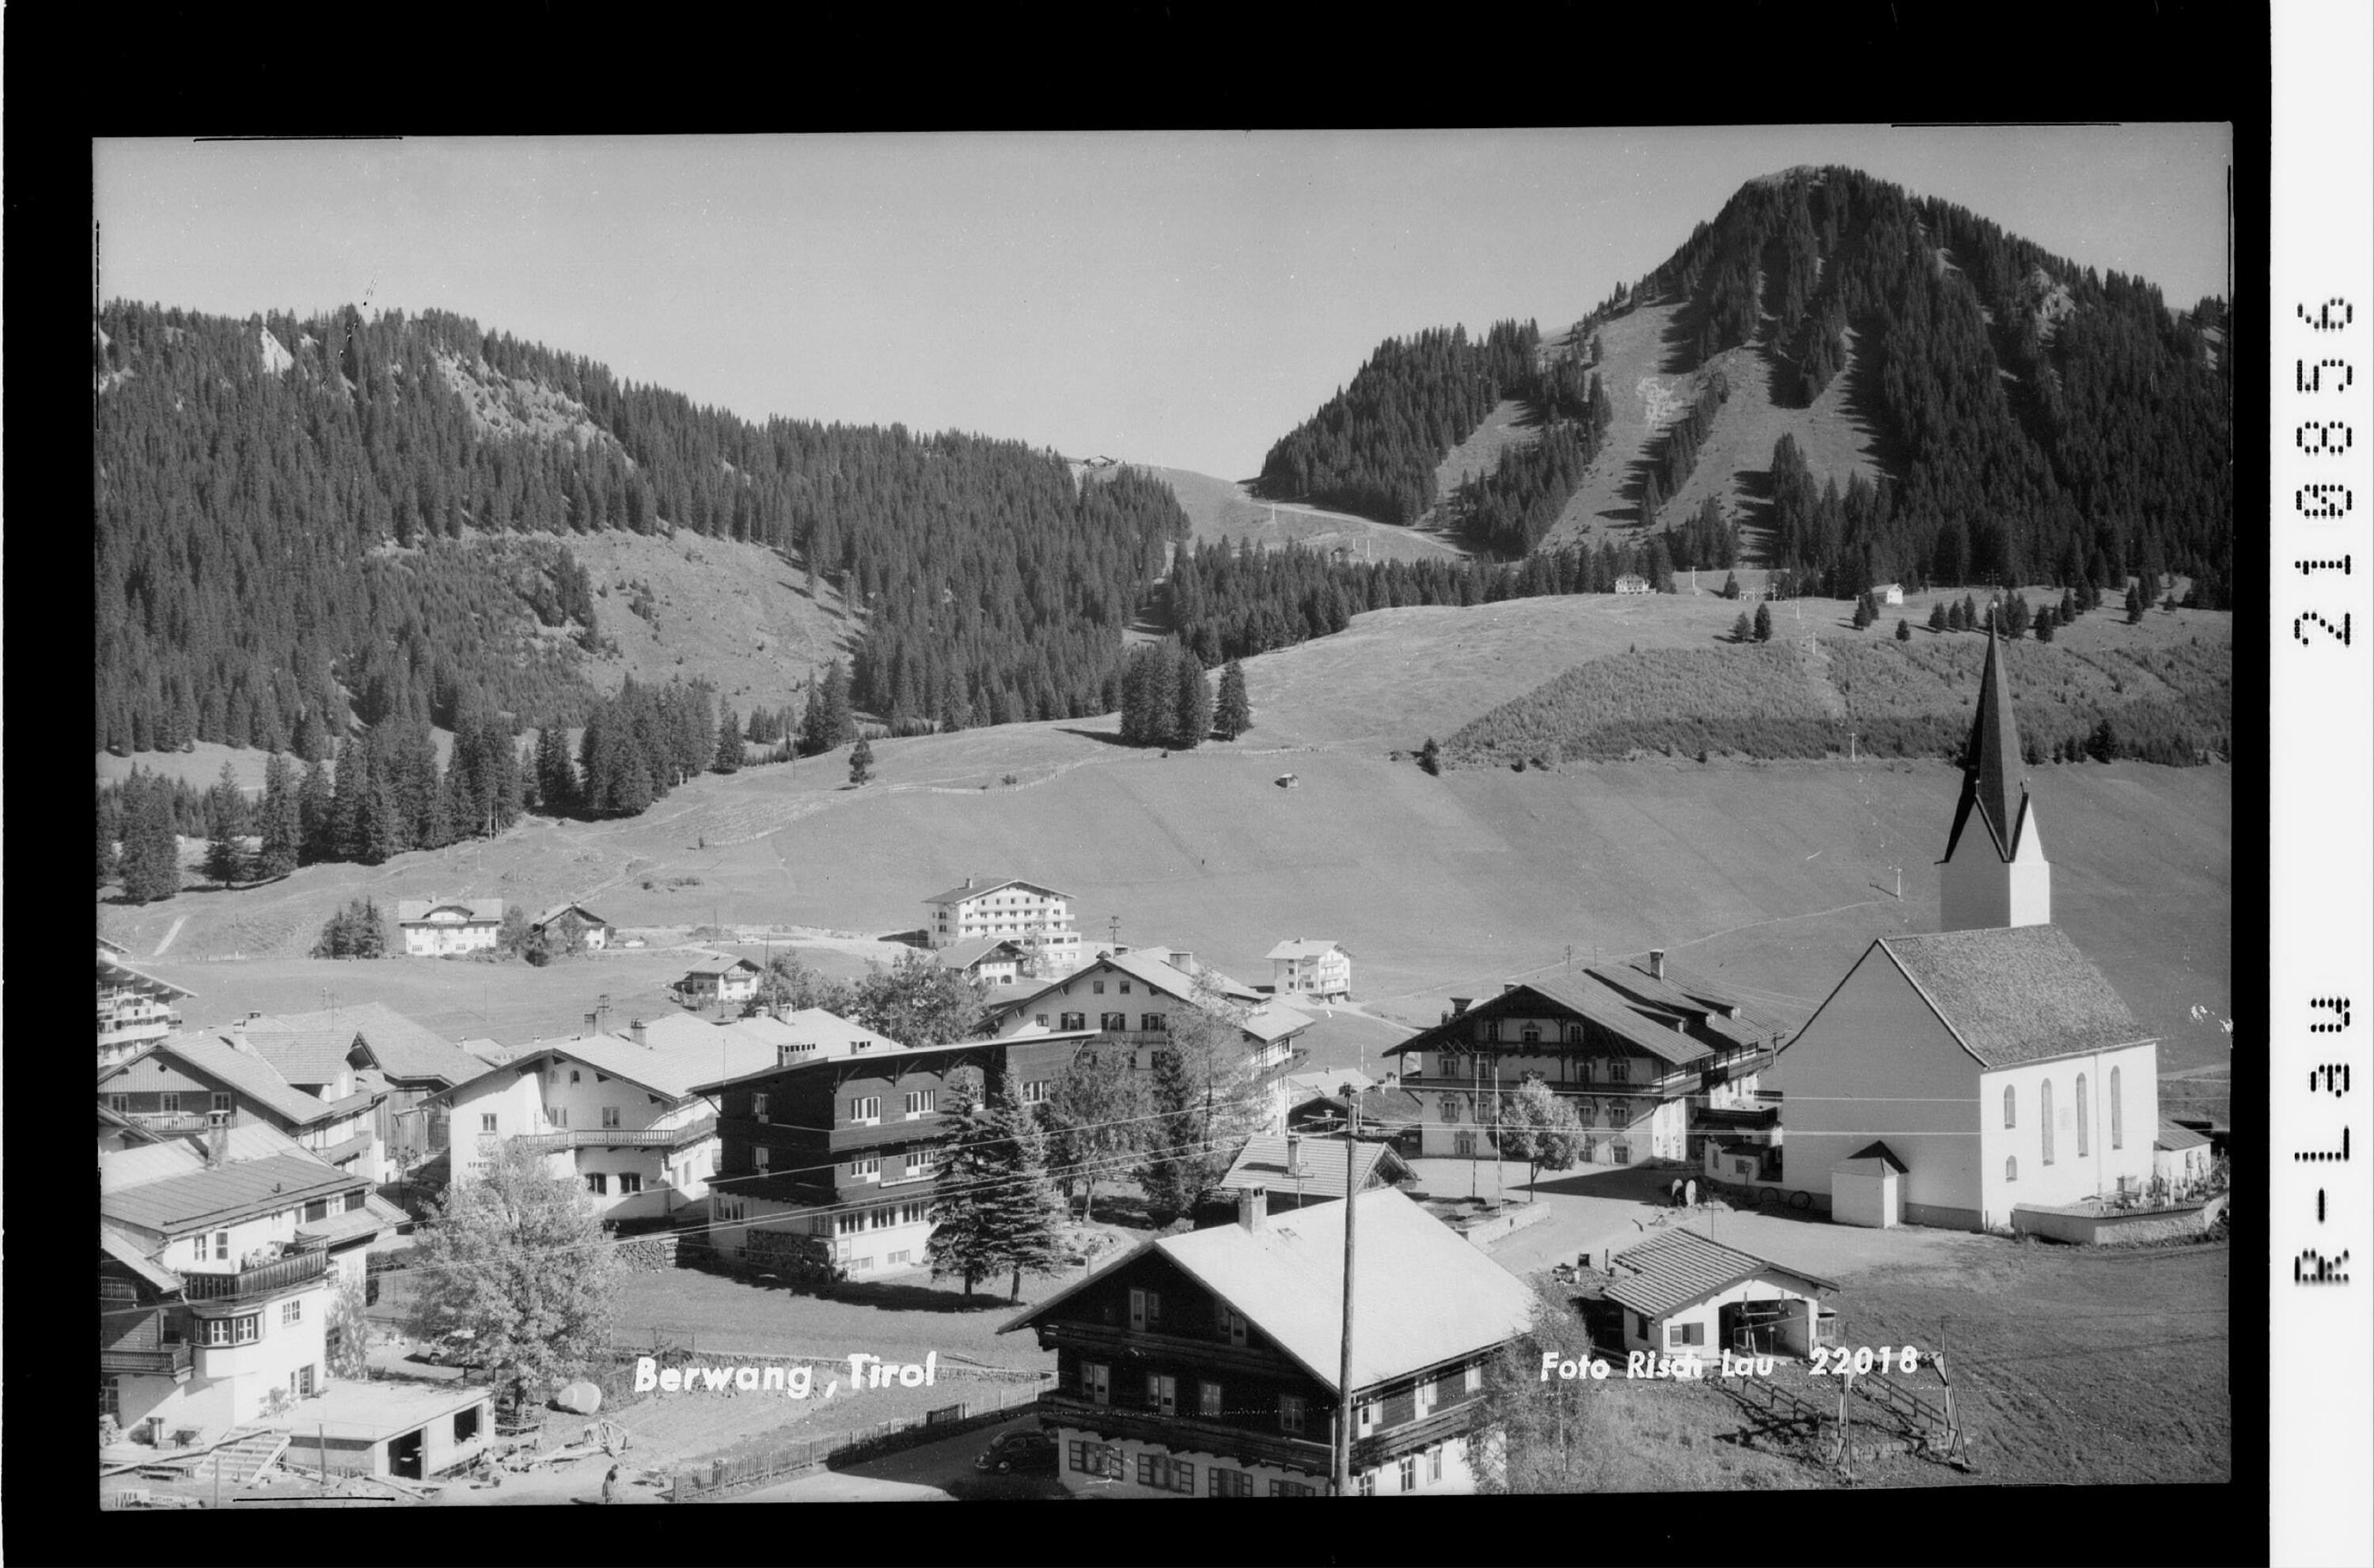 Berwang, Tirol></div>


    <hr>
    <div class=